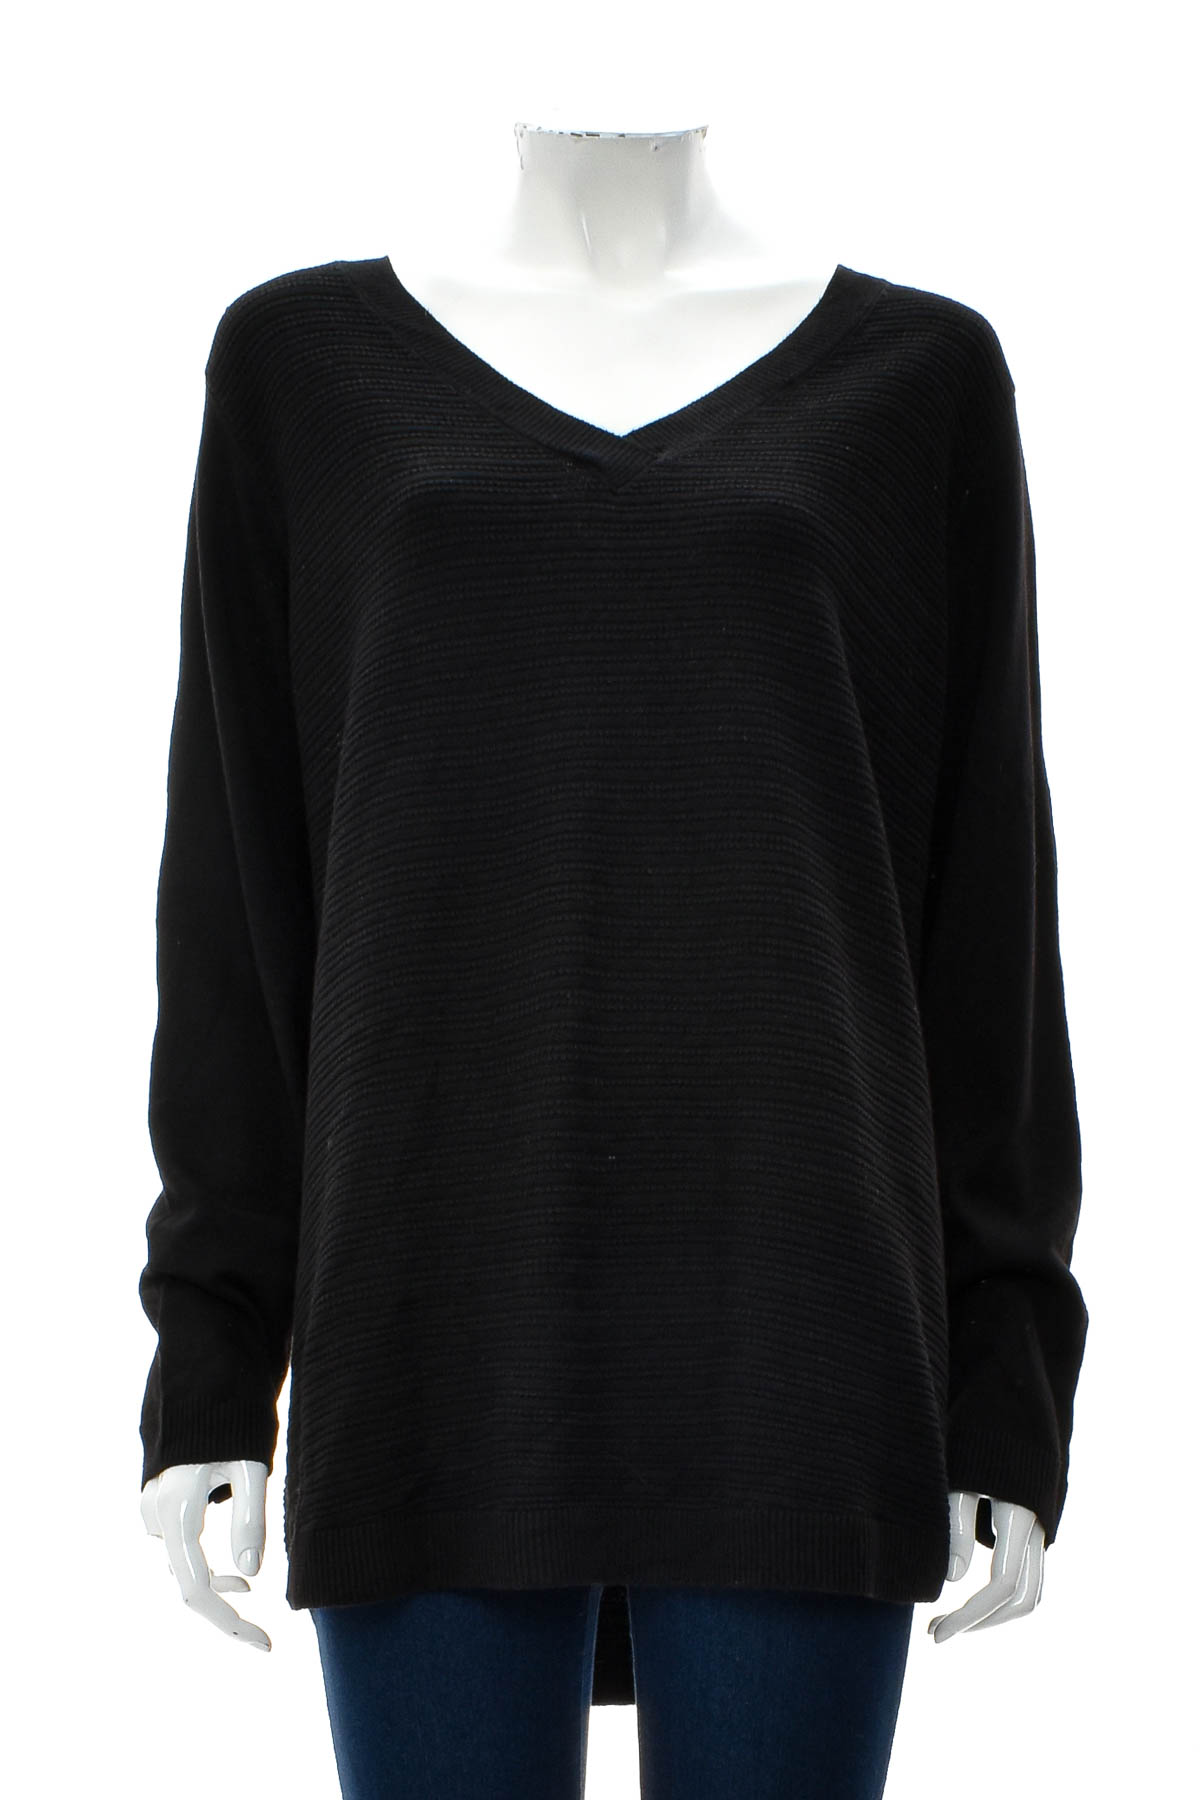 Women's sweater - Hilary Radley - 0